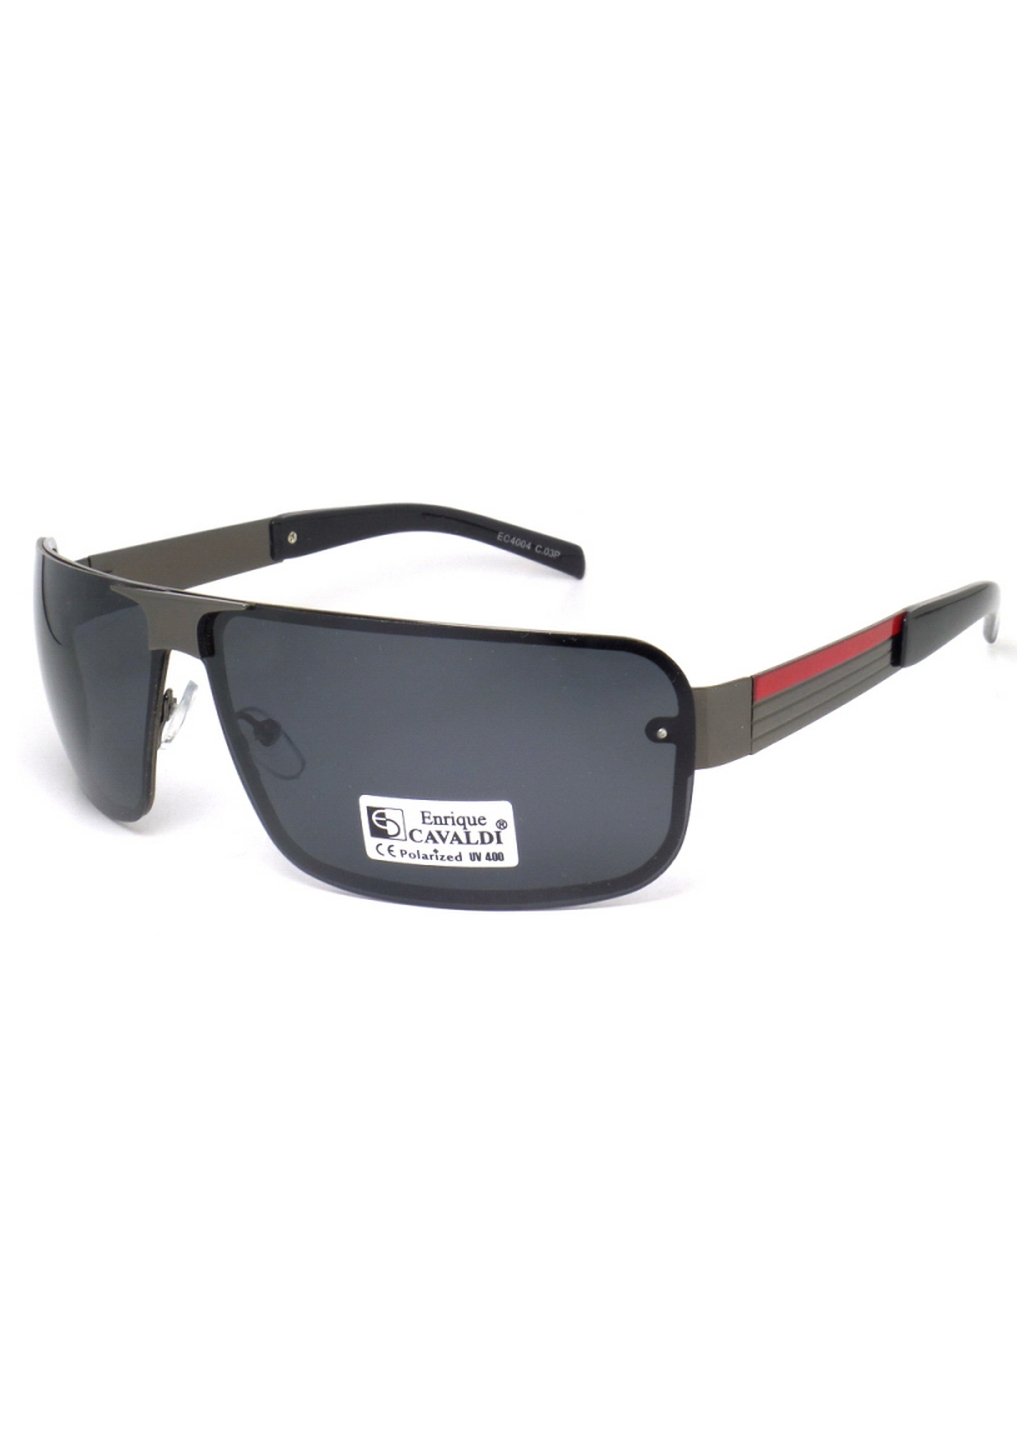 Купить Мужские солнцезащитные очки Enrique Cavaldi EC4004 150008 - Черный в интернет-магазине